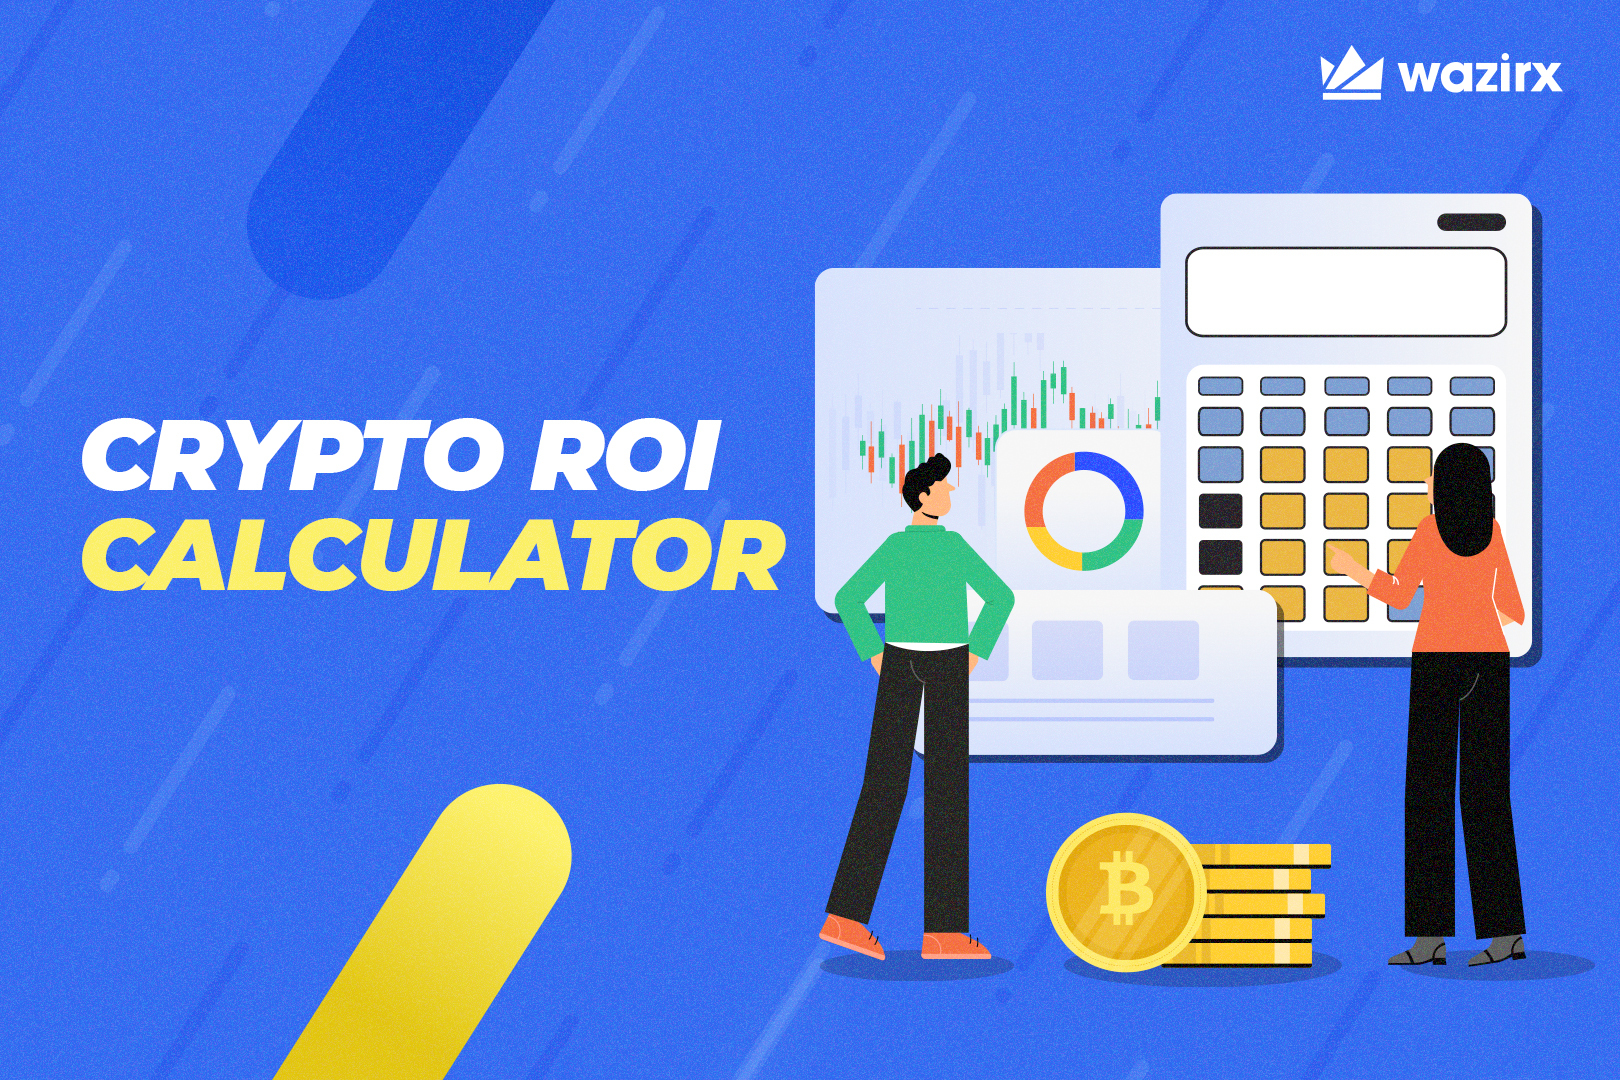 Market Cap Calculator - Coin / Token Market Cap Estimation Tool